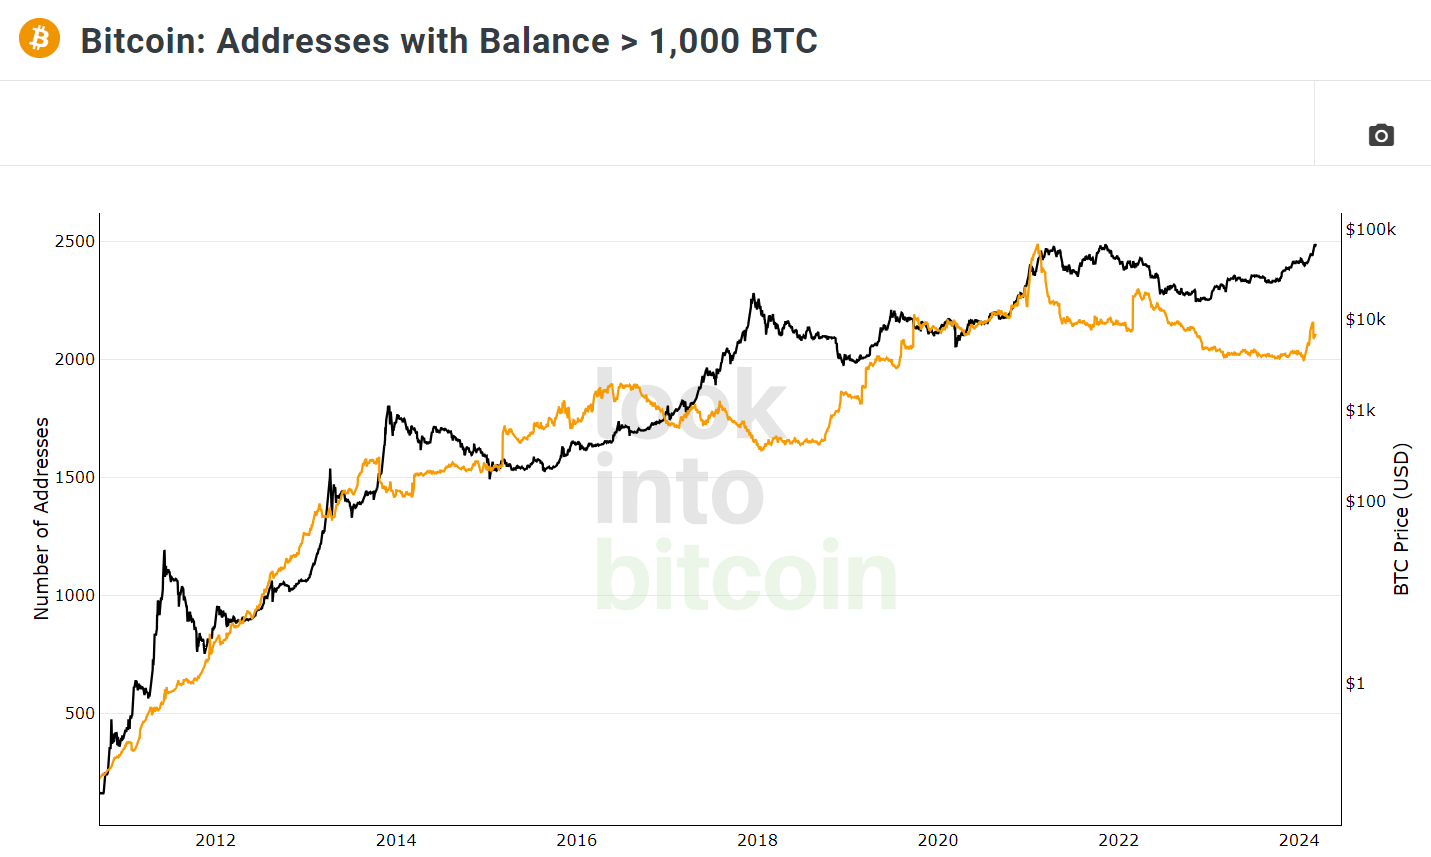 Direcciones bitcoin con más de 1000 BTC vs precio